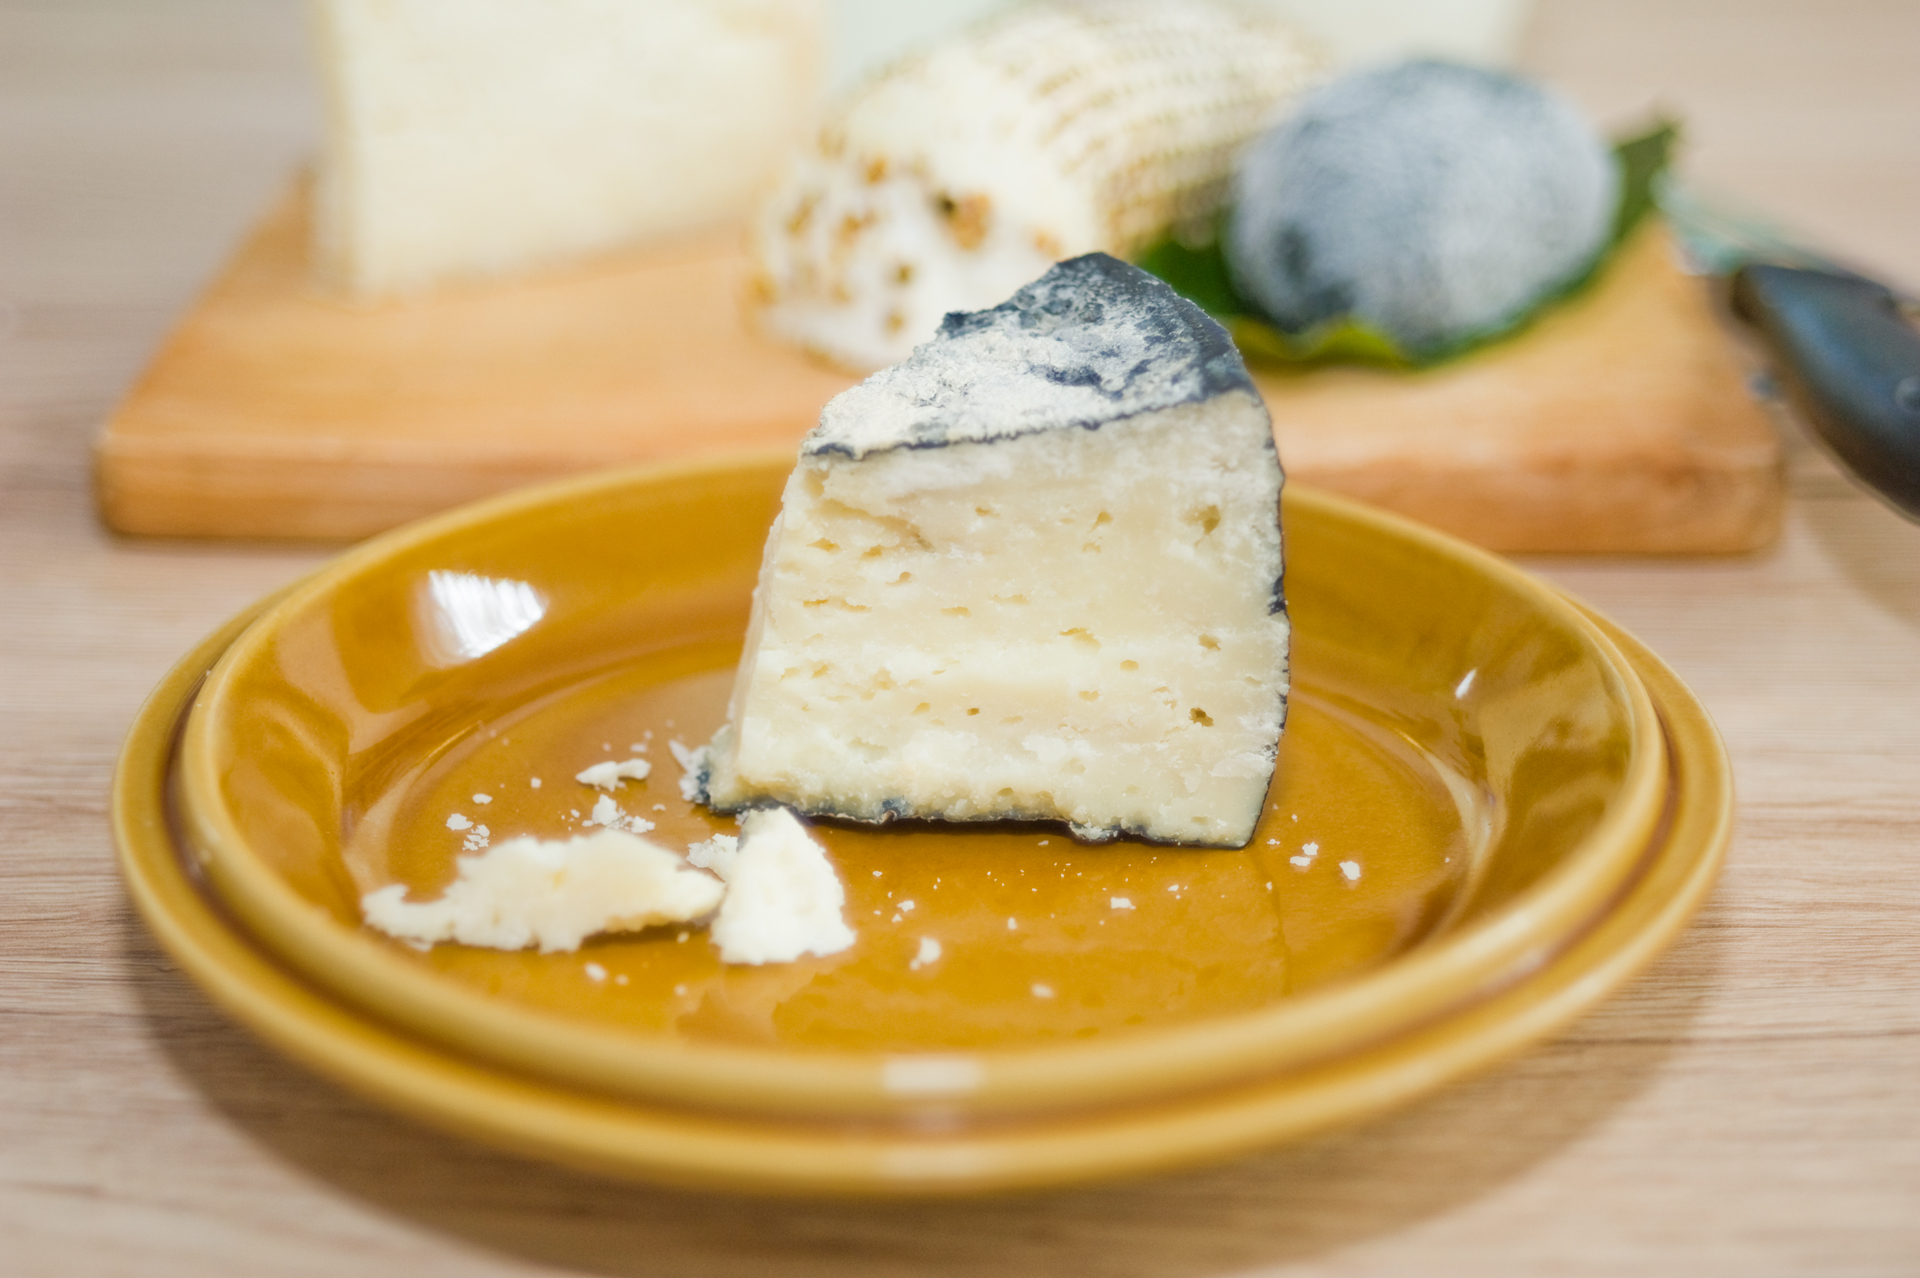 Negro: érlelt sajt fekete viaszos kéreggel